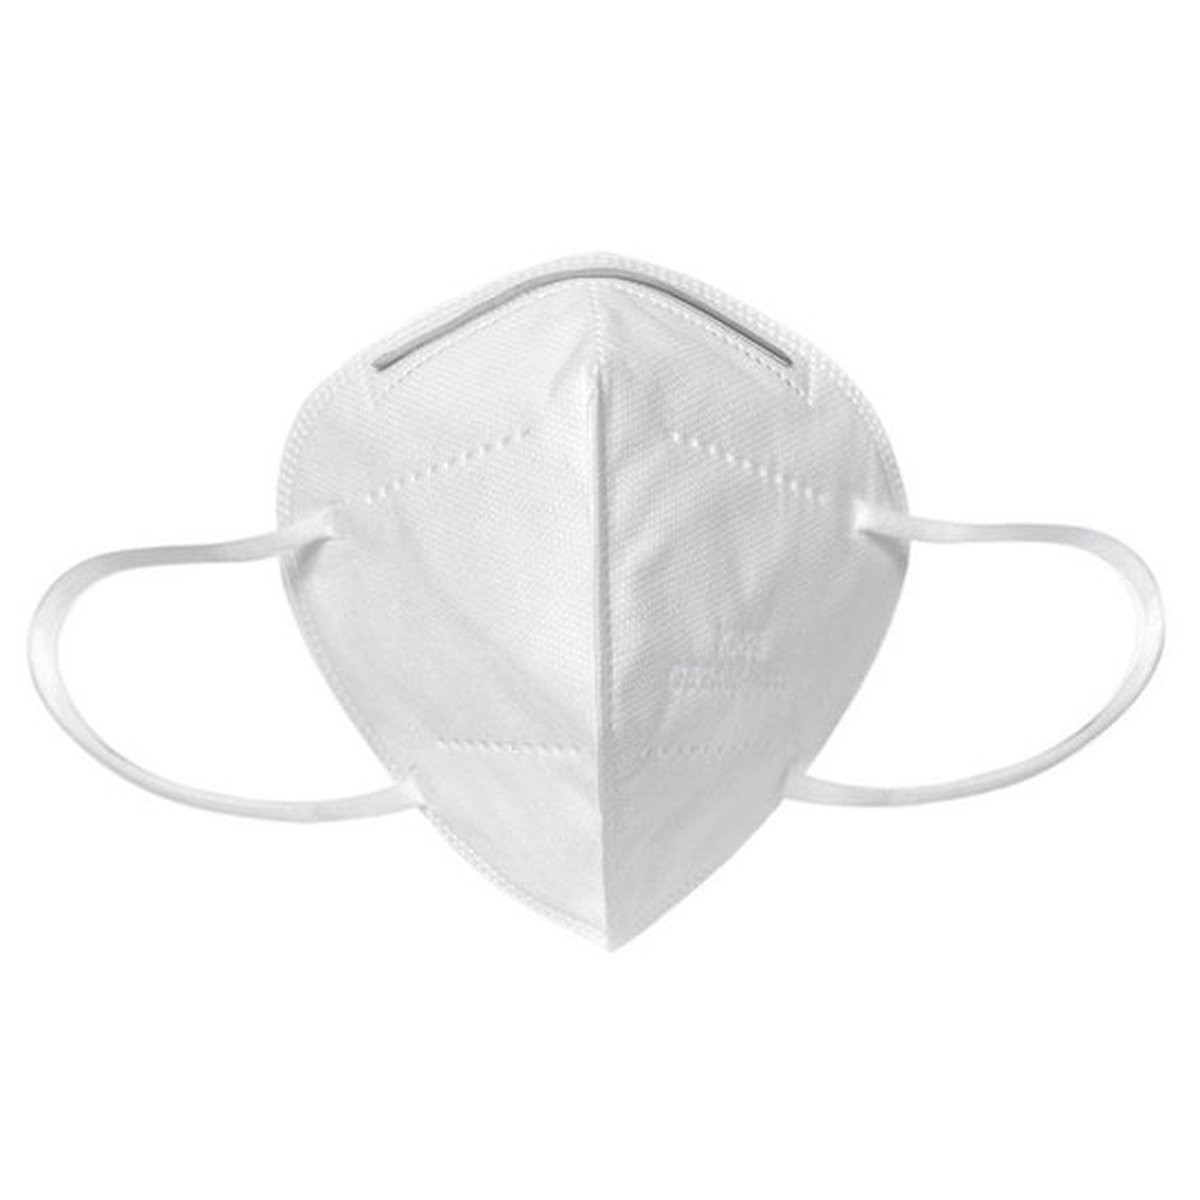 Foto do produto Kit com 25 unid - Máscaras de Proteção KN95 